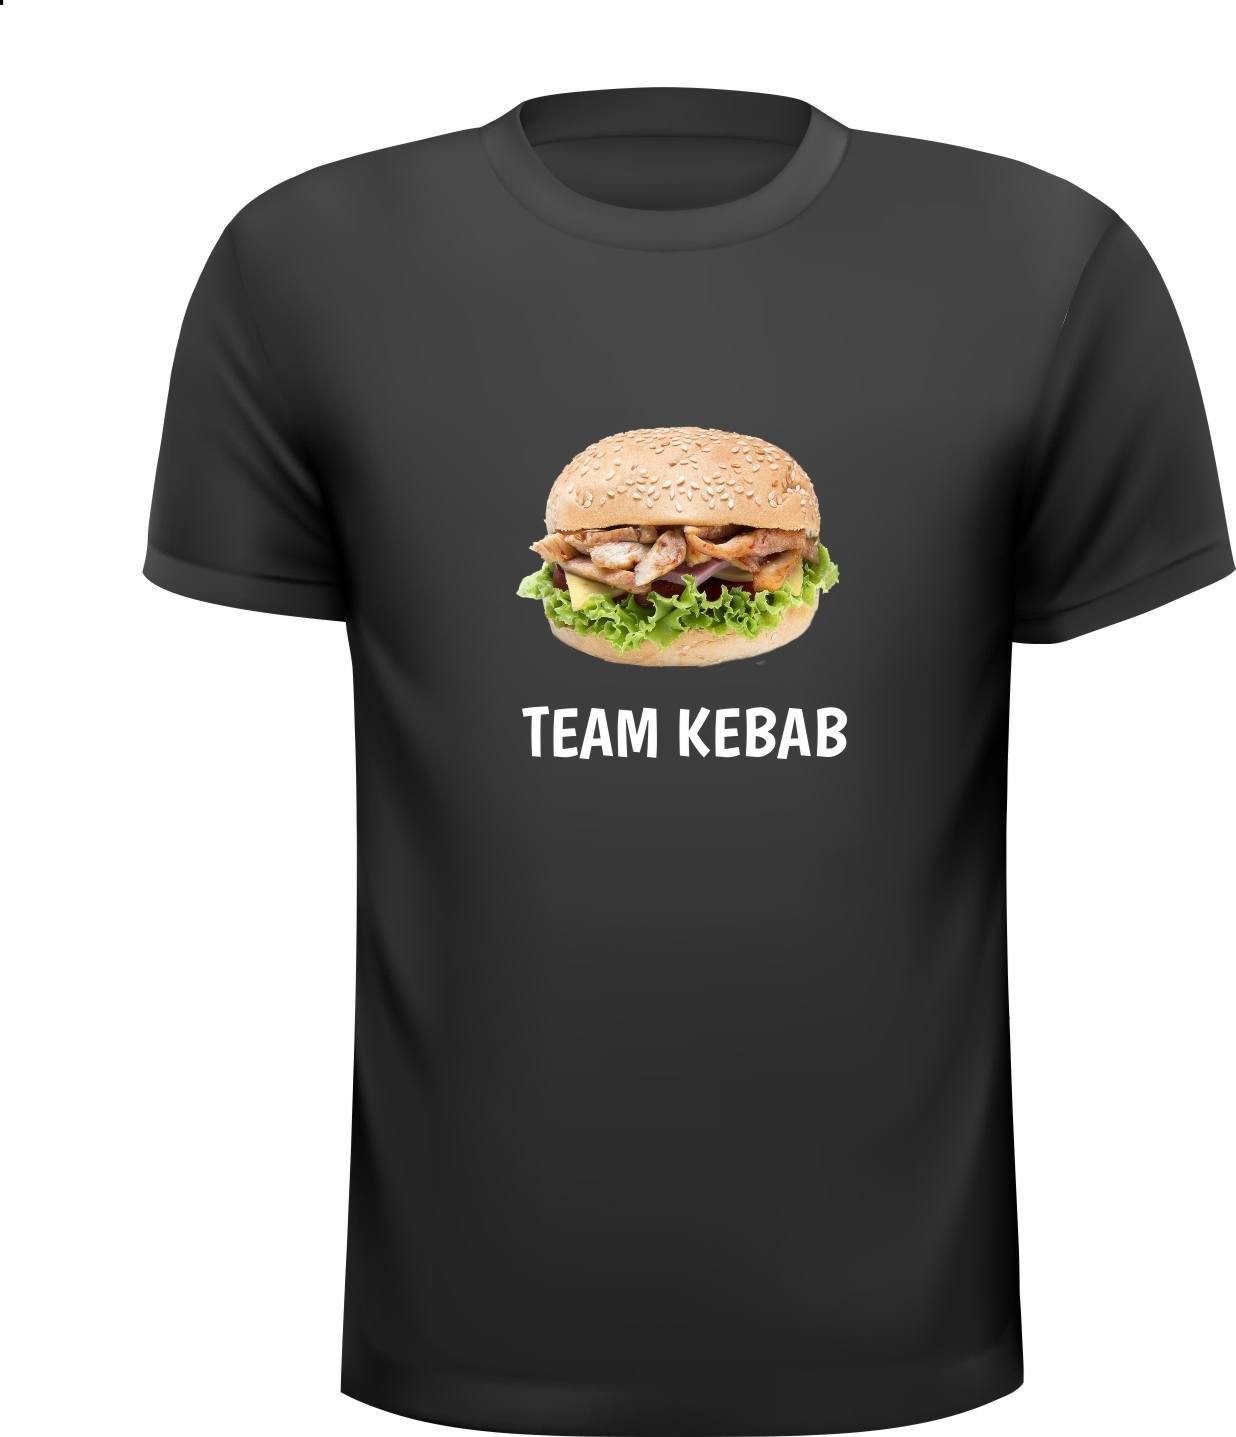 Team kebab shirt